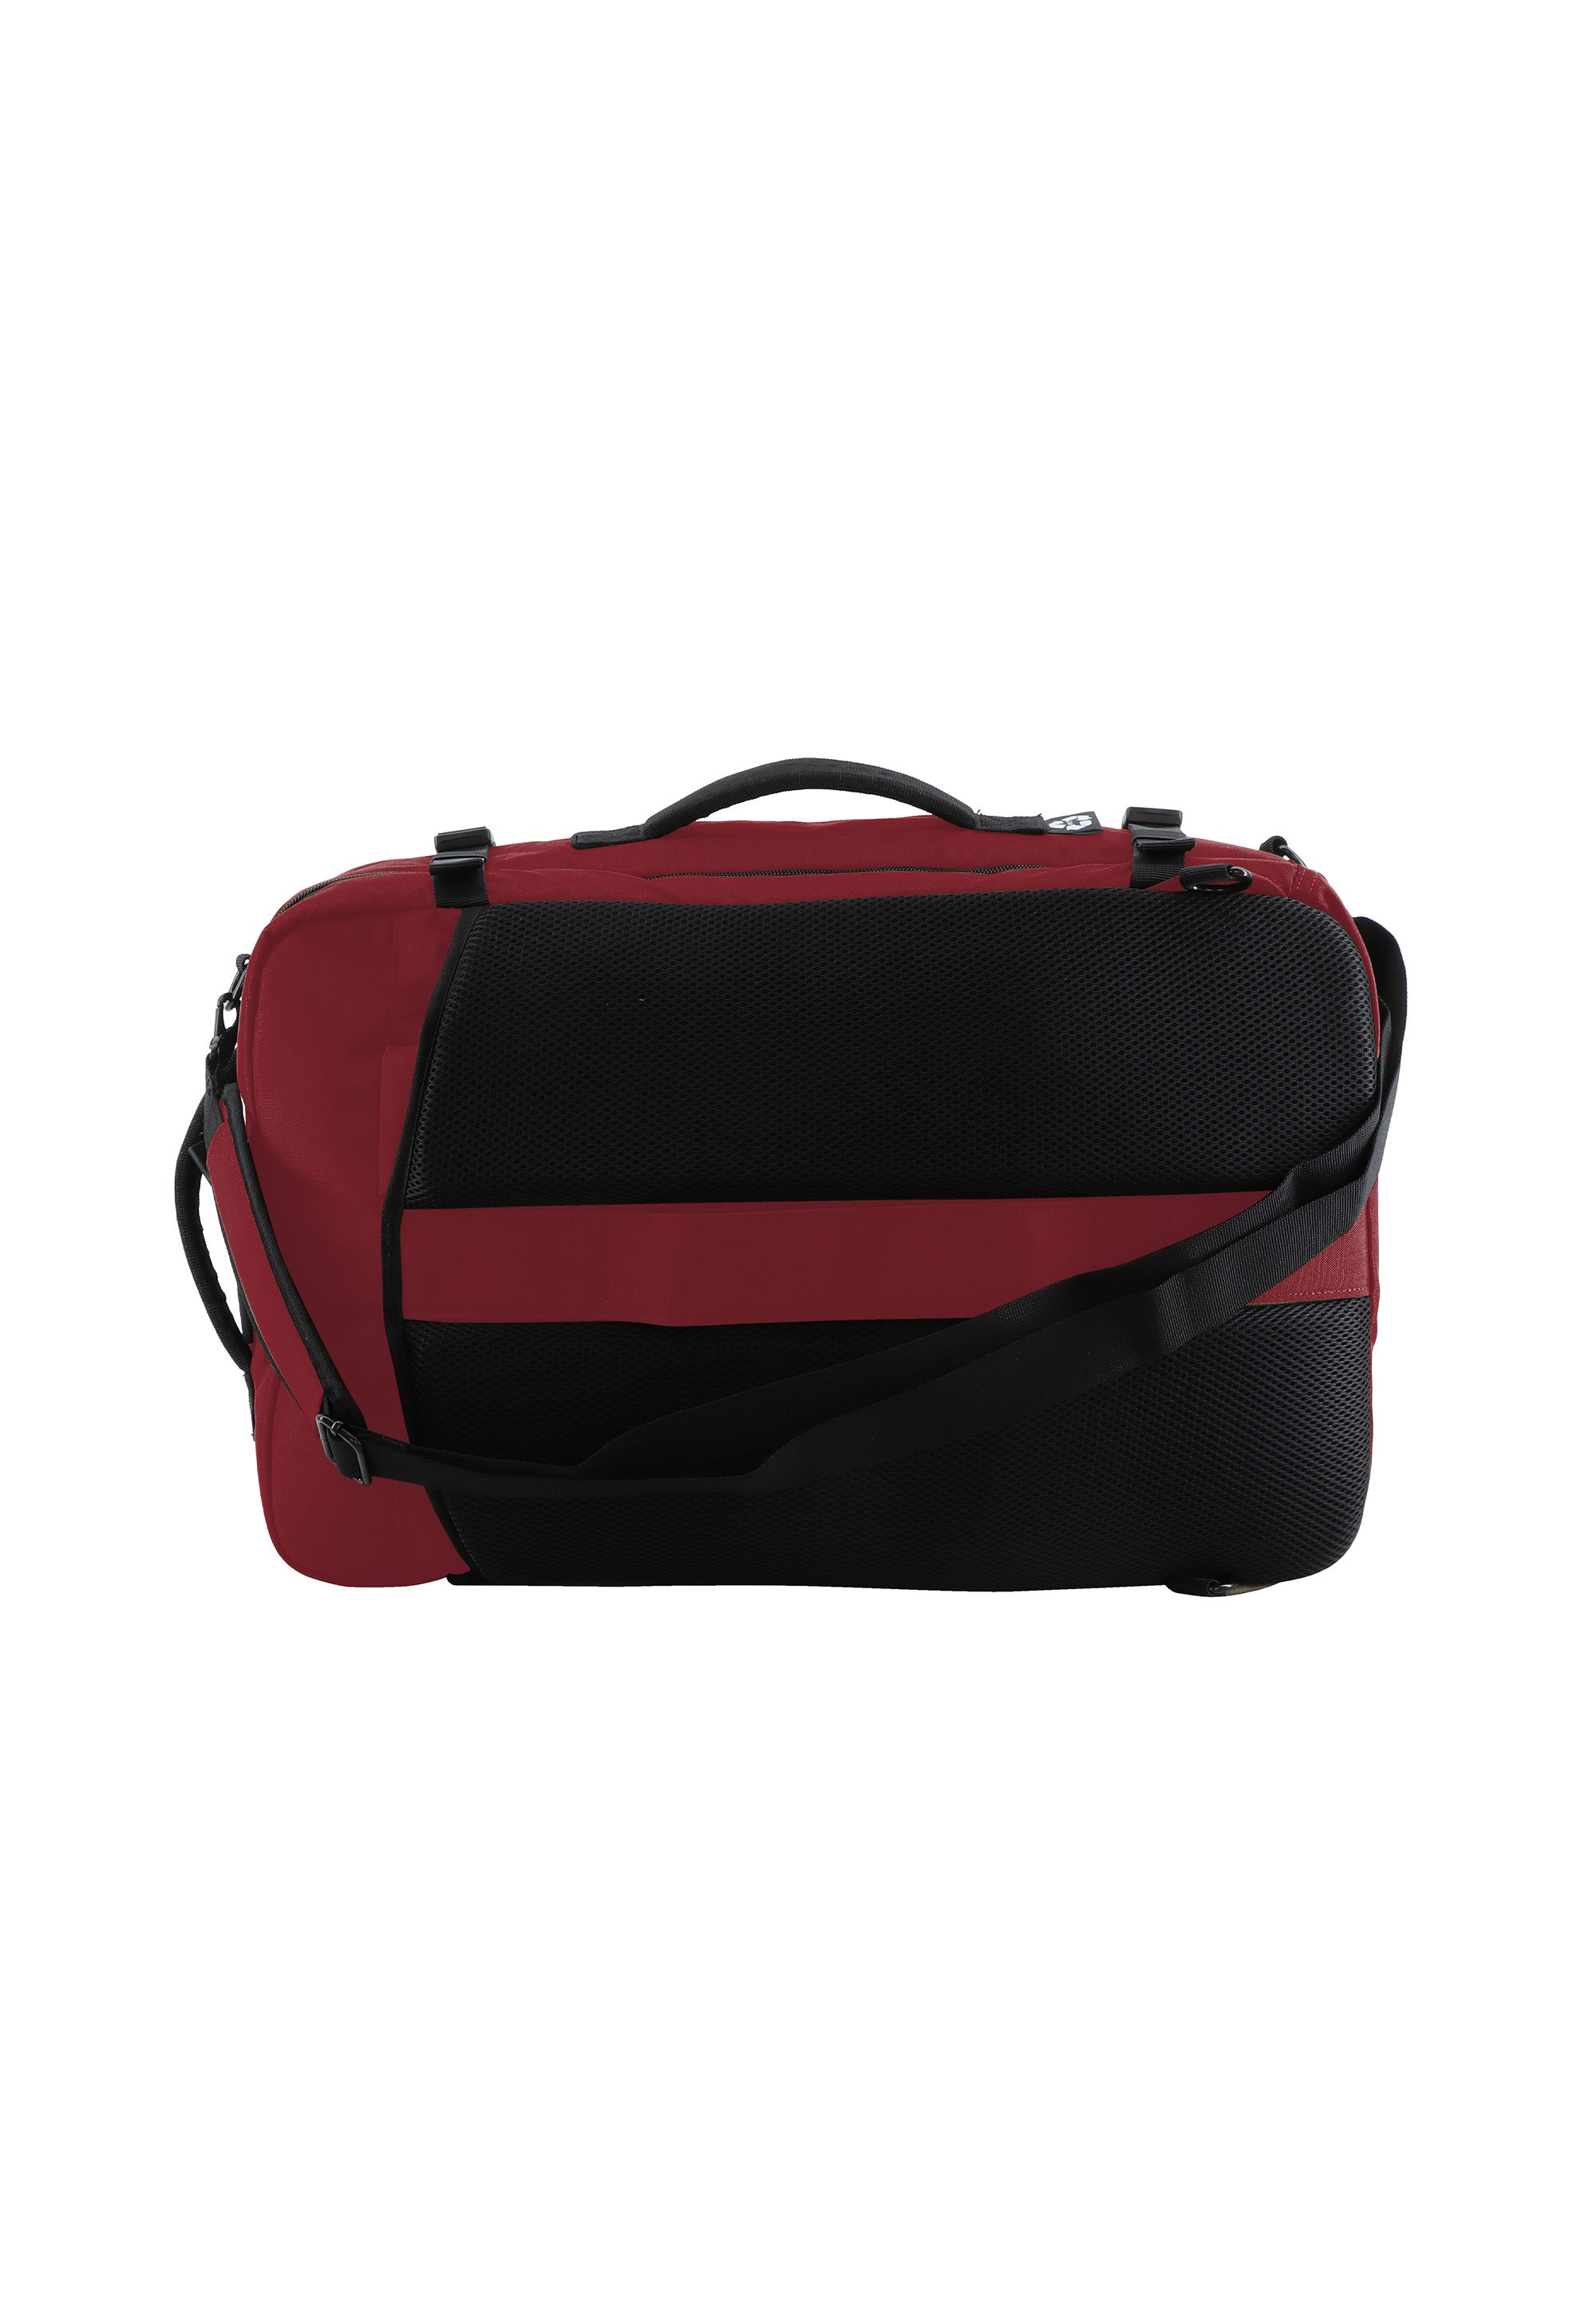 Laptoptasche Rucksack Schultertasche der Nat Geo Serie Ocean in rot RPET N20908